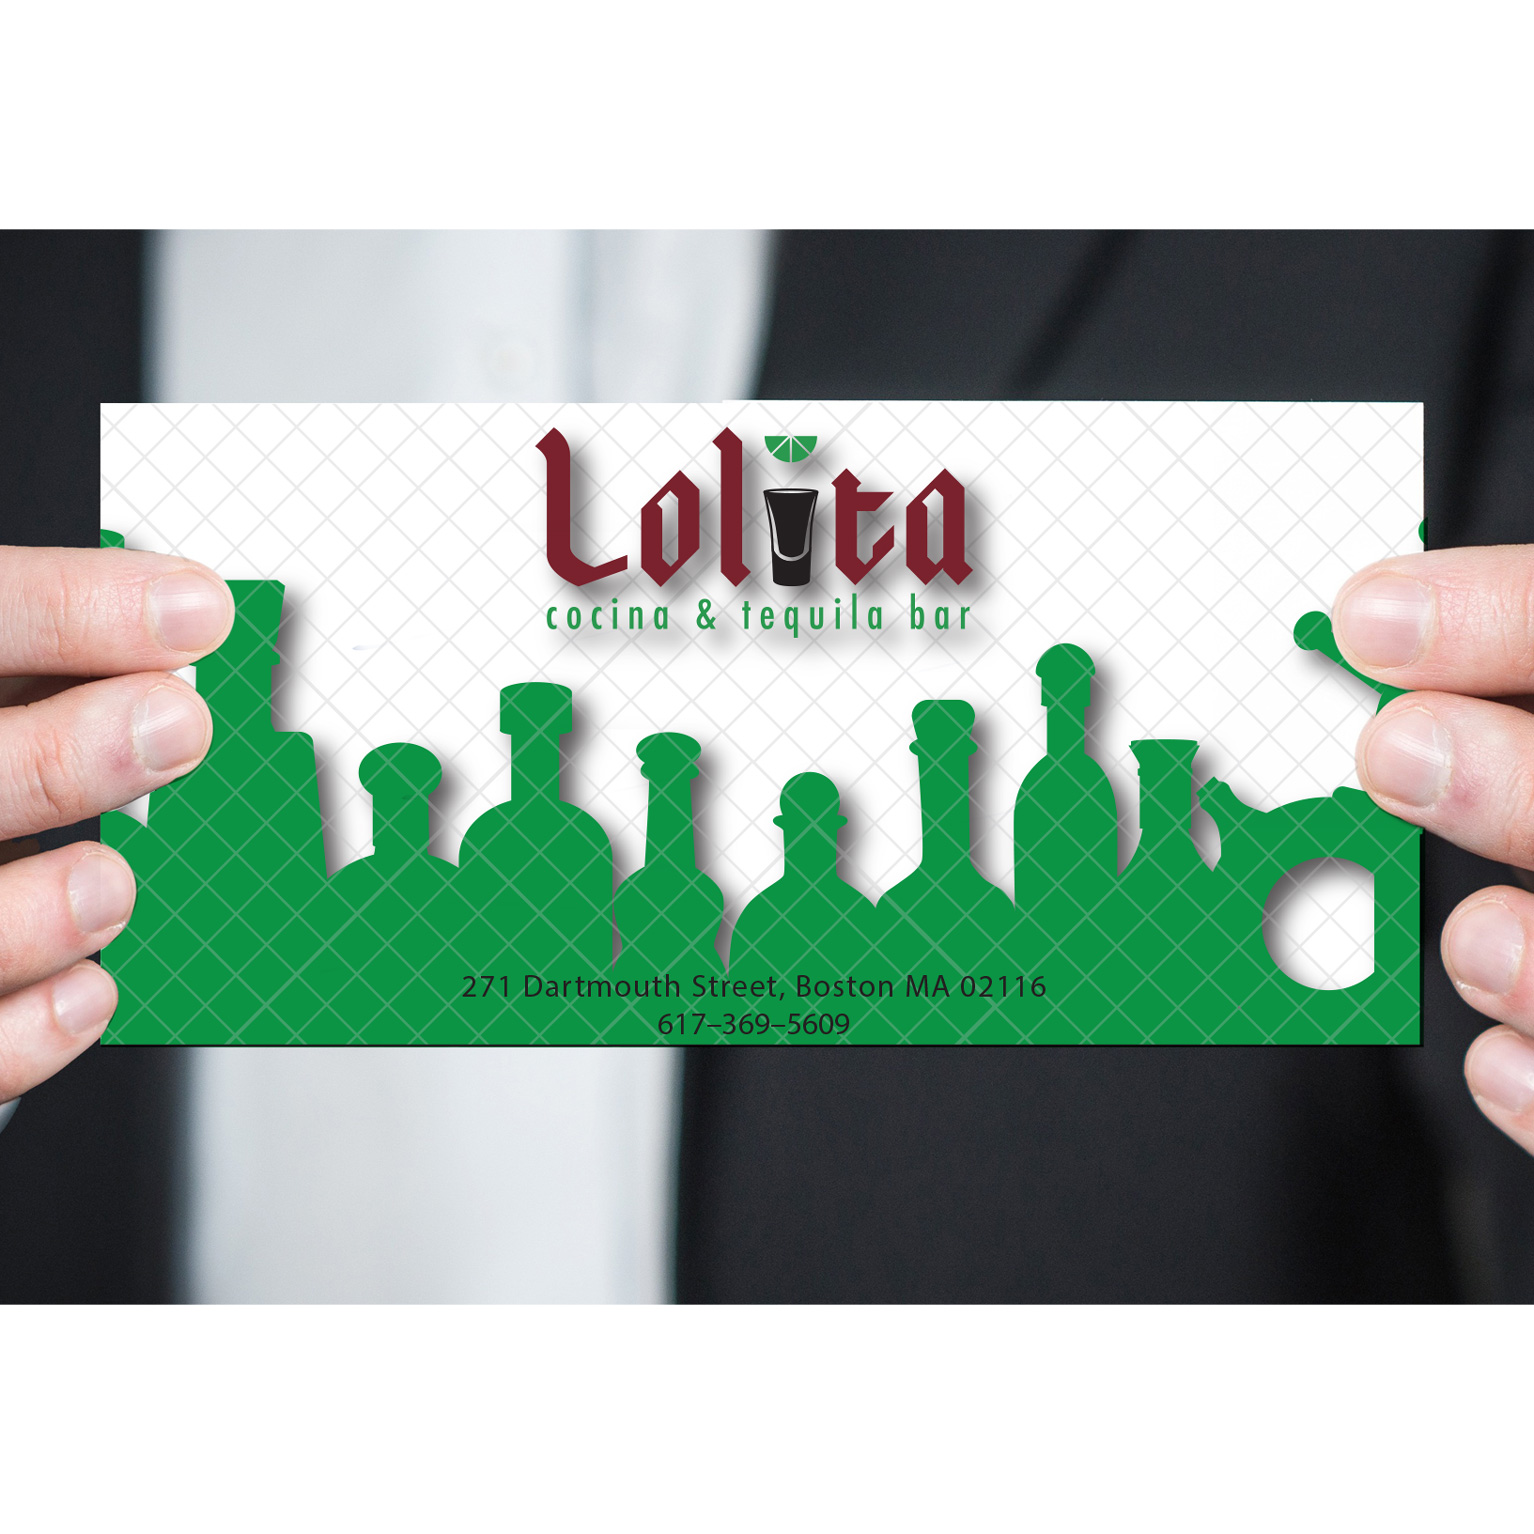 Lolilta rebrand - gift card